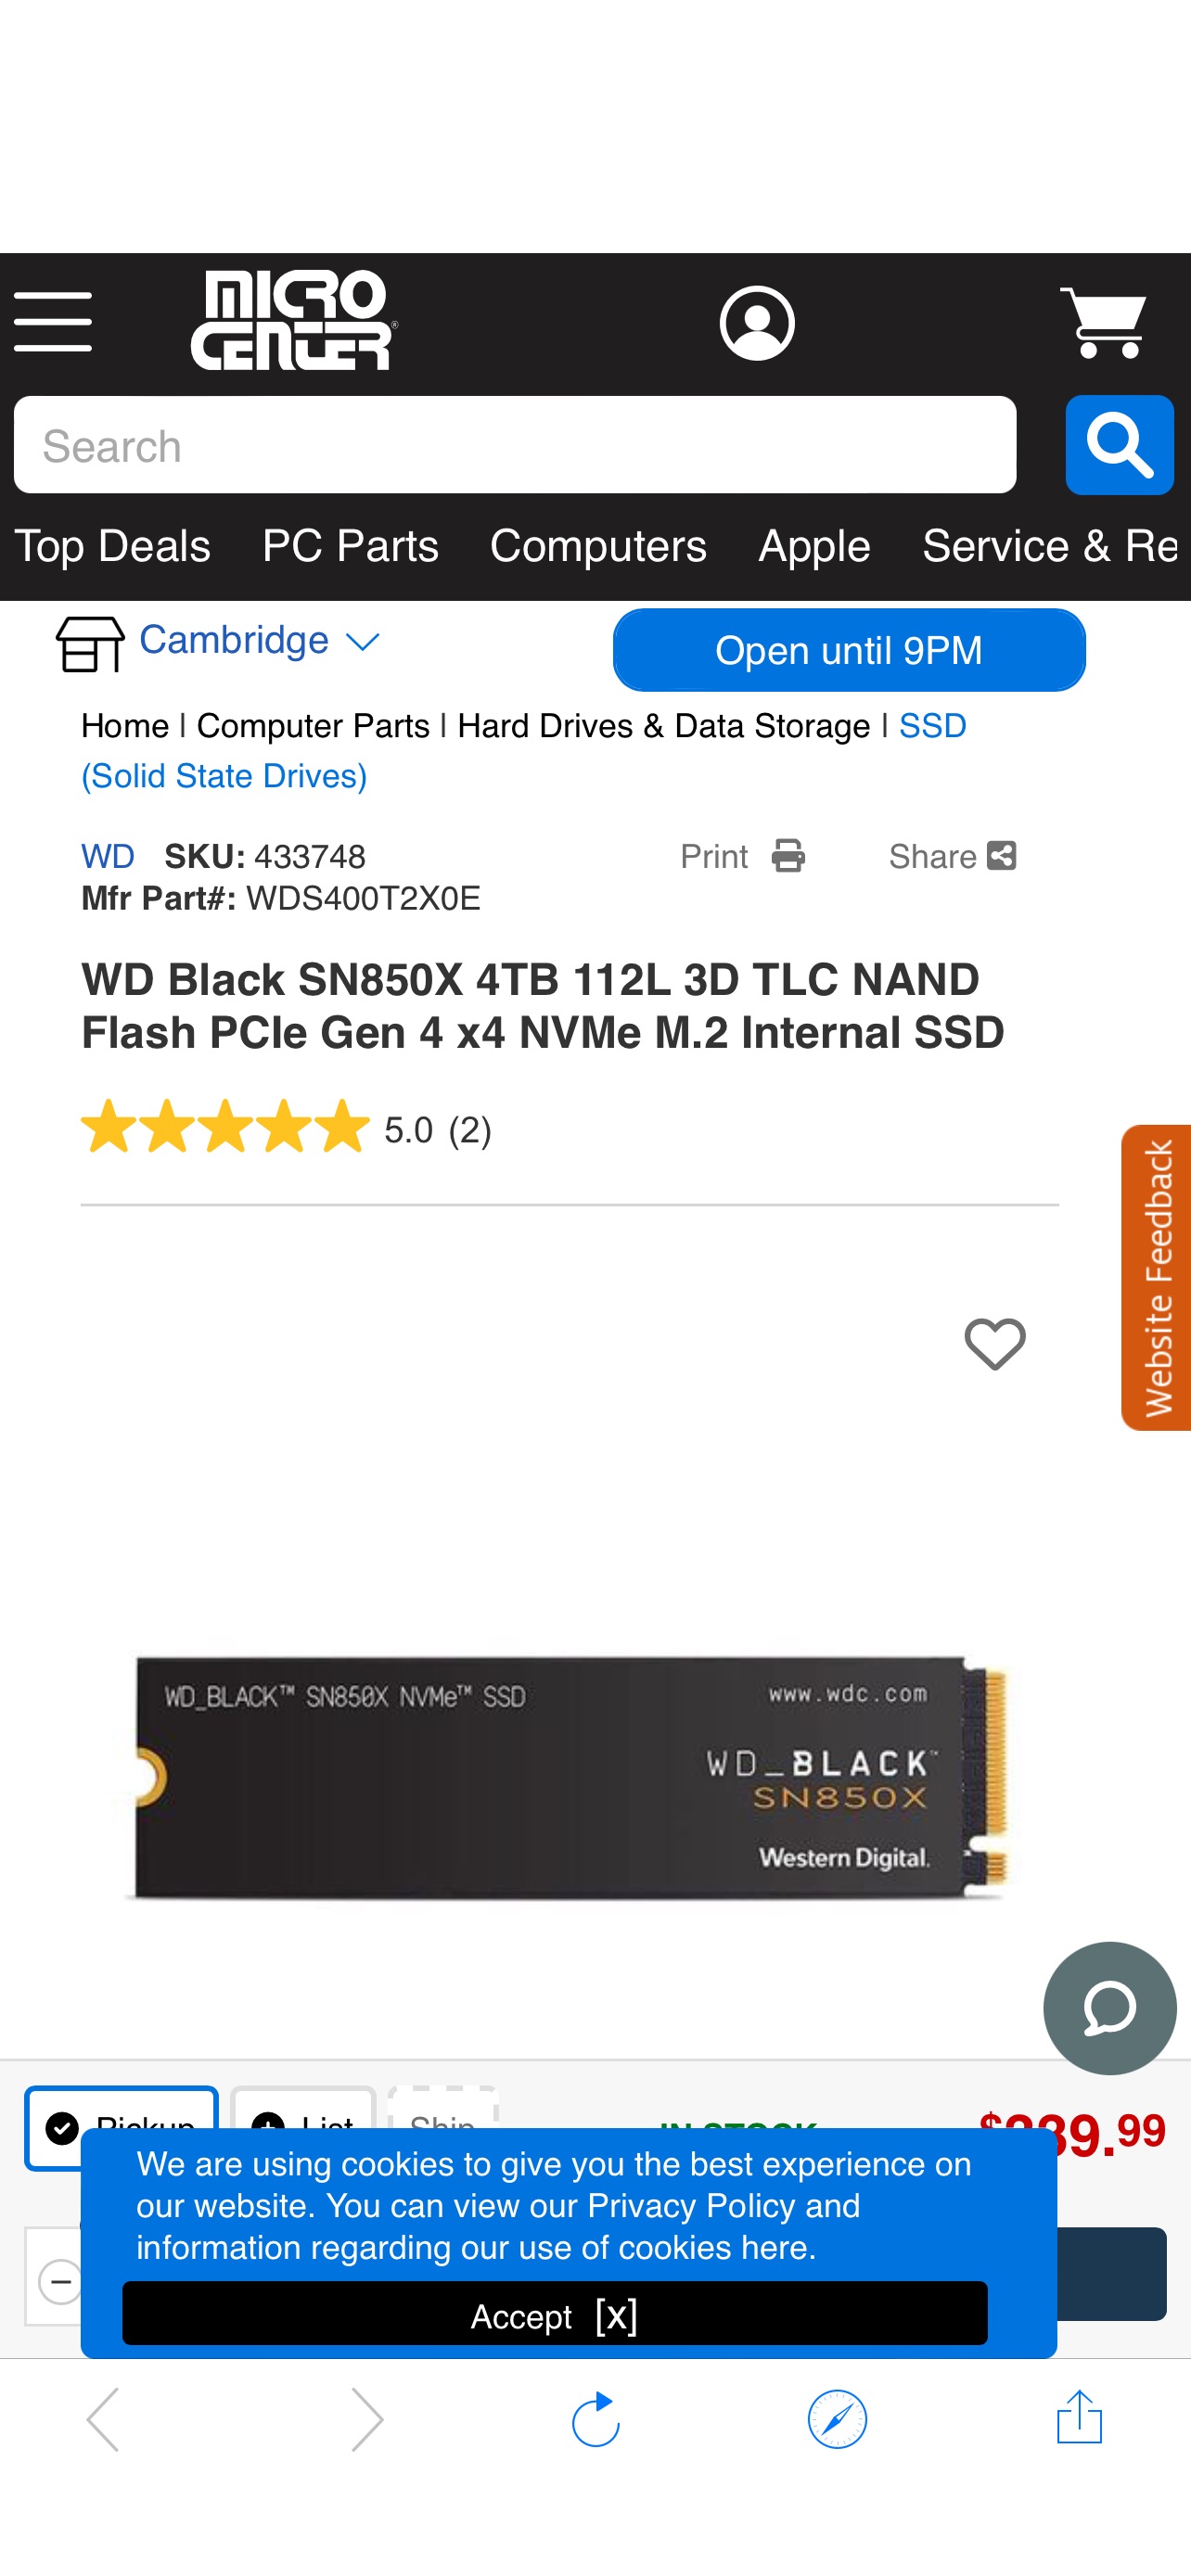 WD Black SN850X 4TB 固态硬盘112L 3D TLC NAND Flash PCIe Gen 4 x4 NVMe M.2 Internal SSD - Micro Center